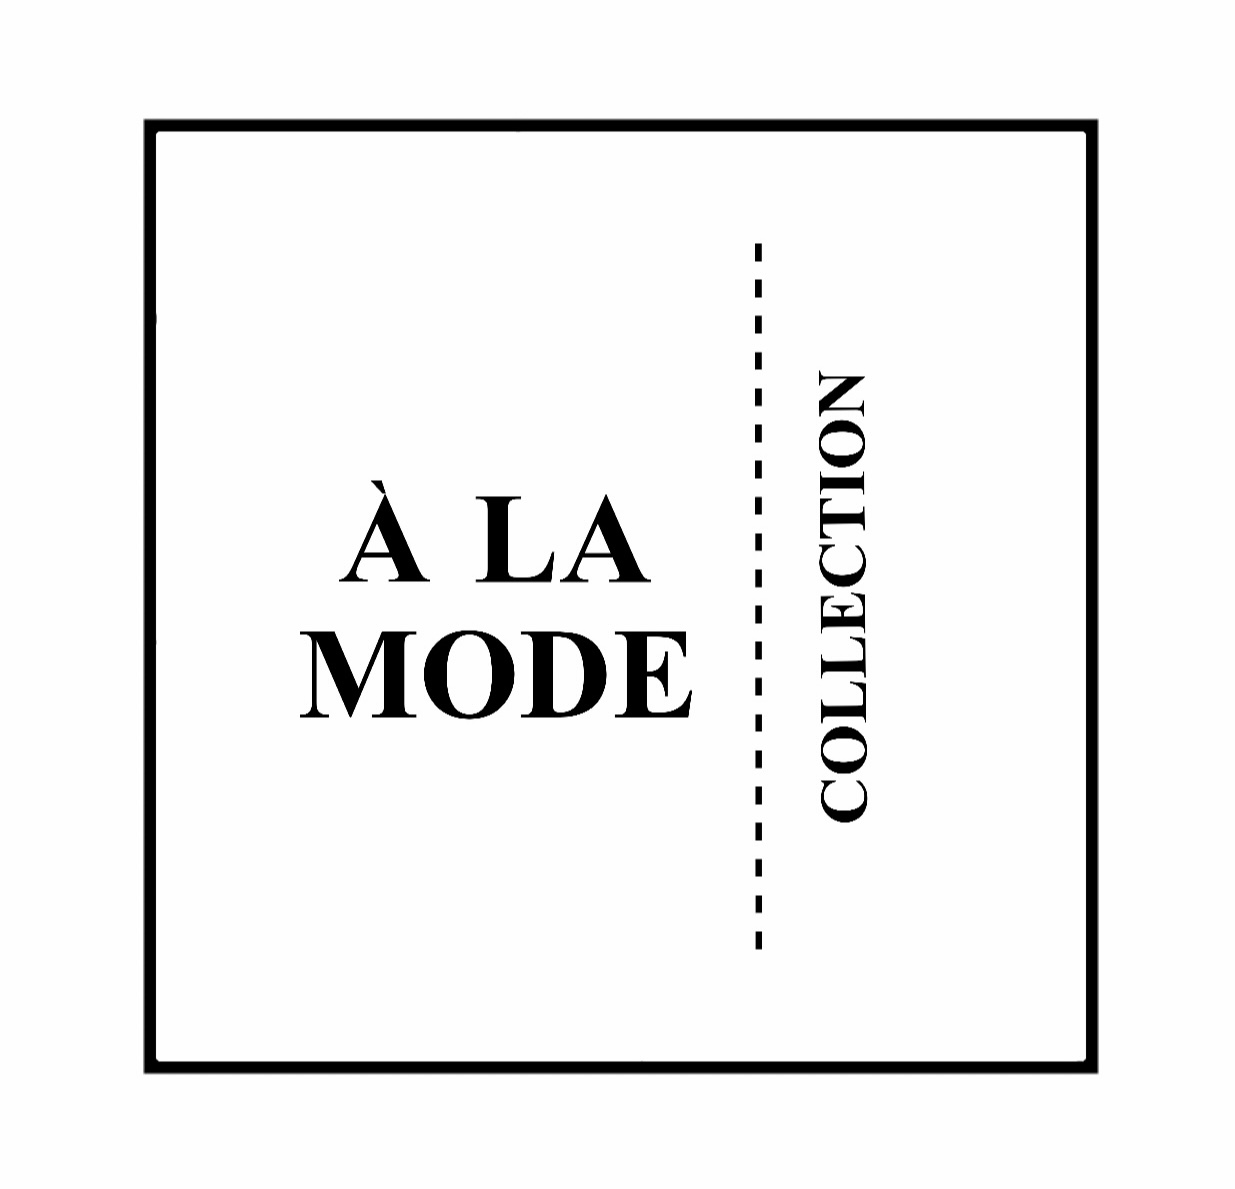 A la mode collection